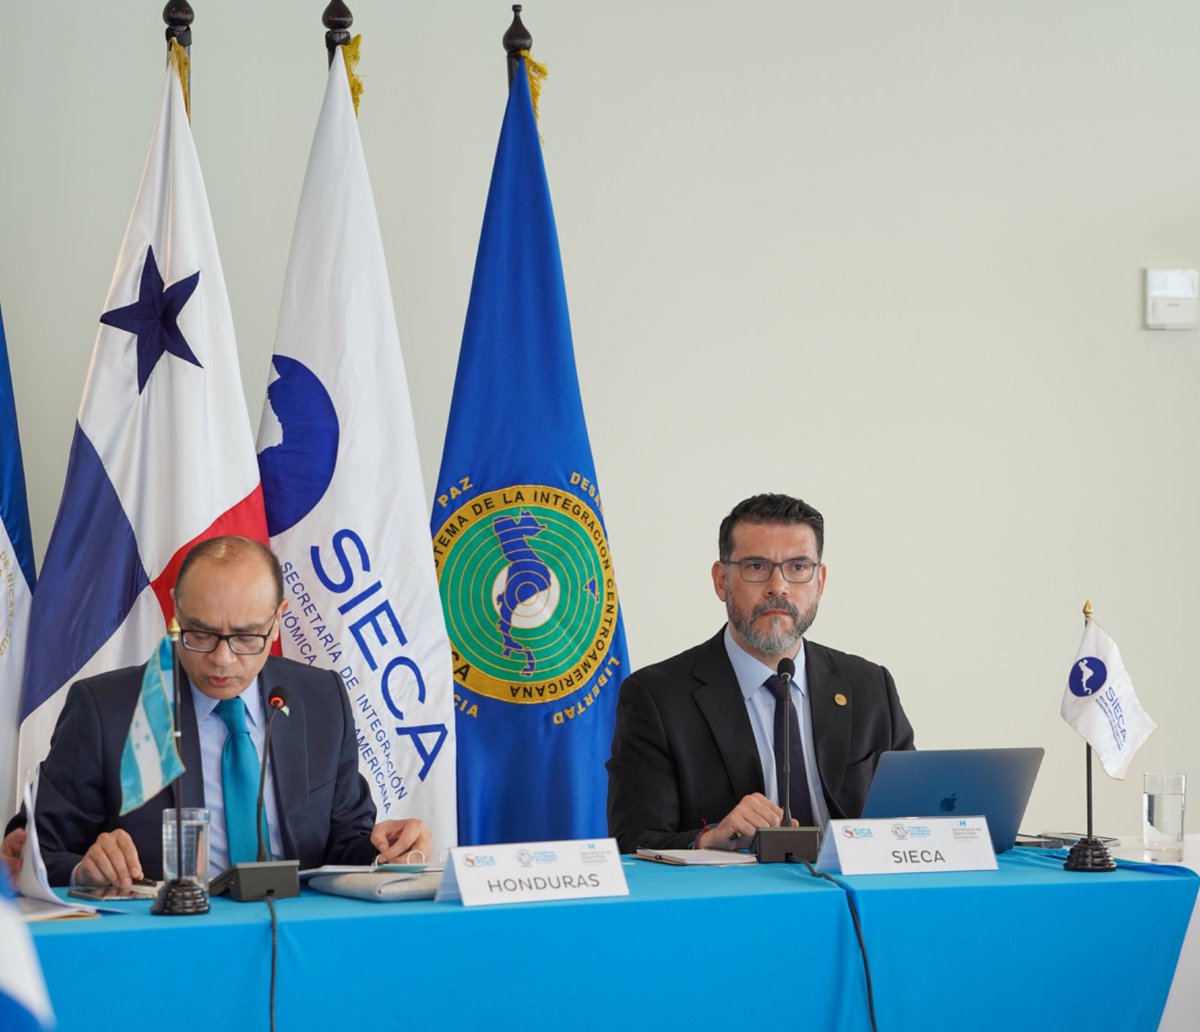 ¡Centroamérica avanza hacia una mayor integración económica! En la reunión del Foro de Viceministros en Tegucigalpa, Honduras, se aprobaron importantes temas para el progreso regional. Desde el impulso de la Unión Aduanera hasta la facilitación del comercio.